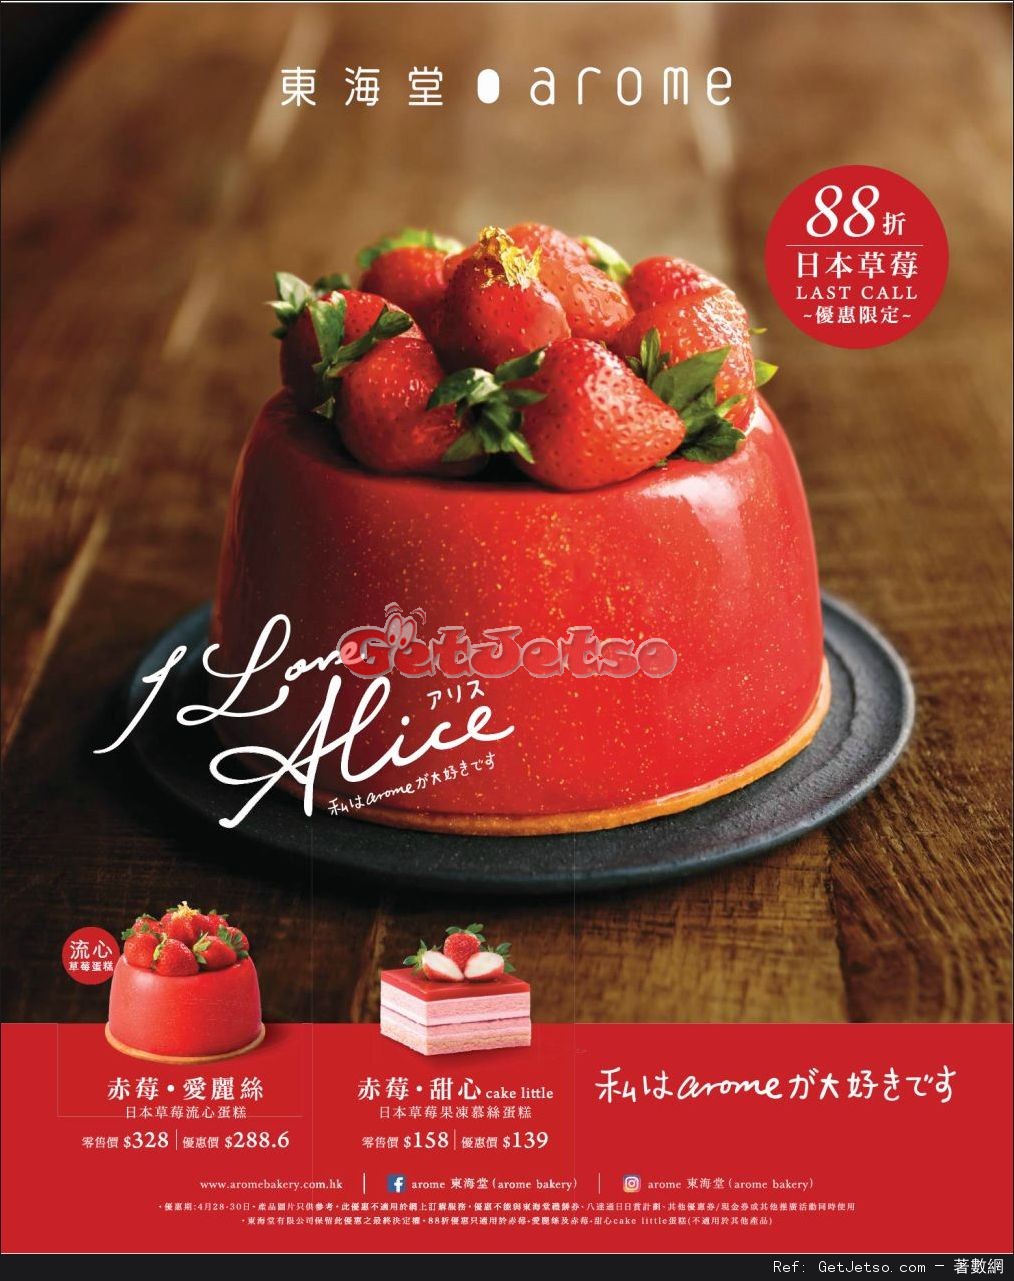 東海堂日本草莓蛋糕88折優惠(17年4月28-30日)圖片1